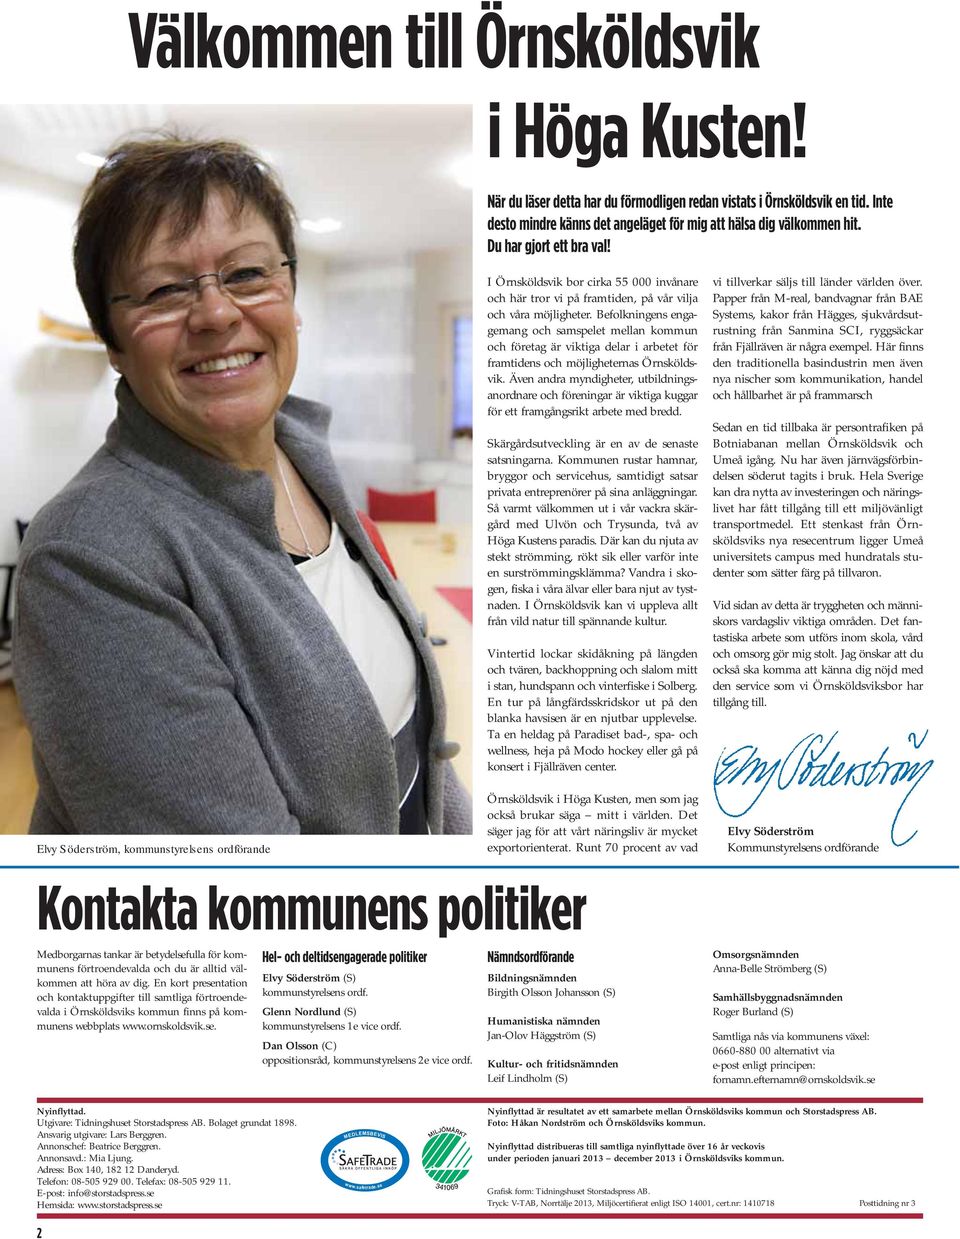 Befolkningens engagemang och samspelet mellan kommun och företag är viktiga delar i arbetet för framtidens och möjligheternas Örnsköldsvik.